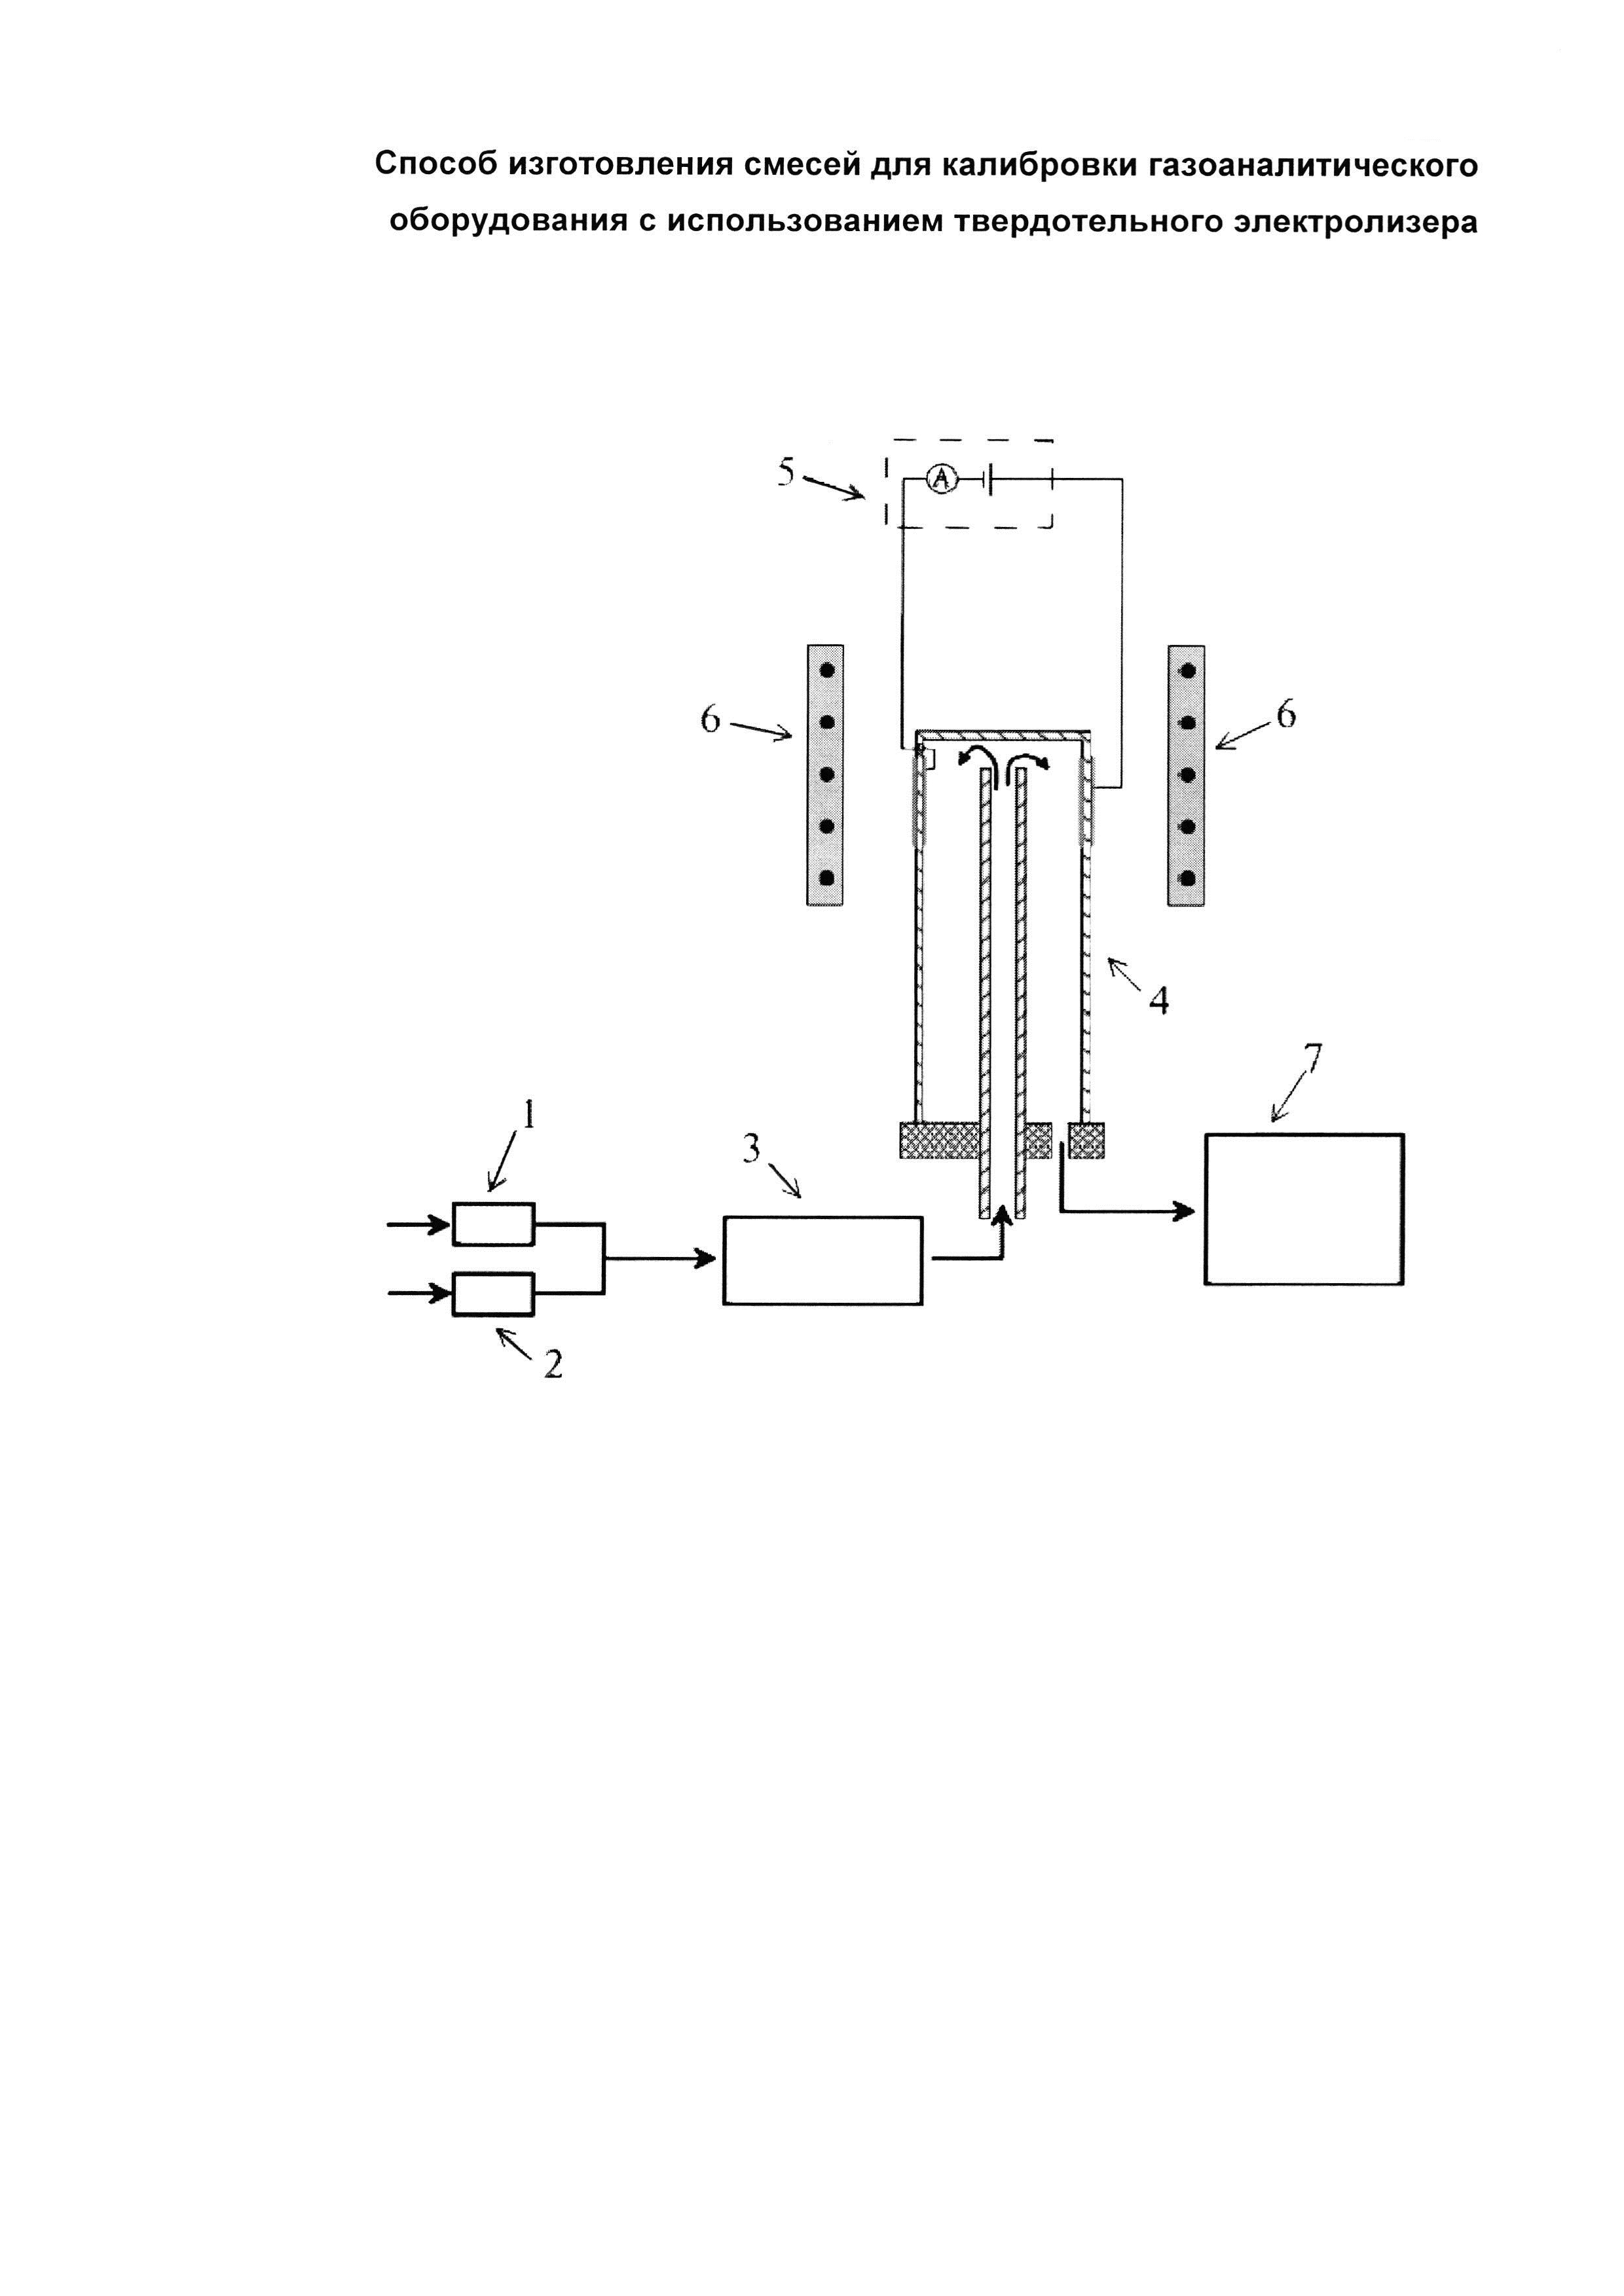 Способ изготовления смесей для калибровки газоаналитического оборудования с использованием твердотельного электролизера